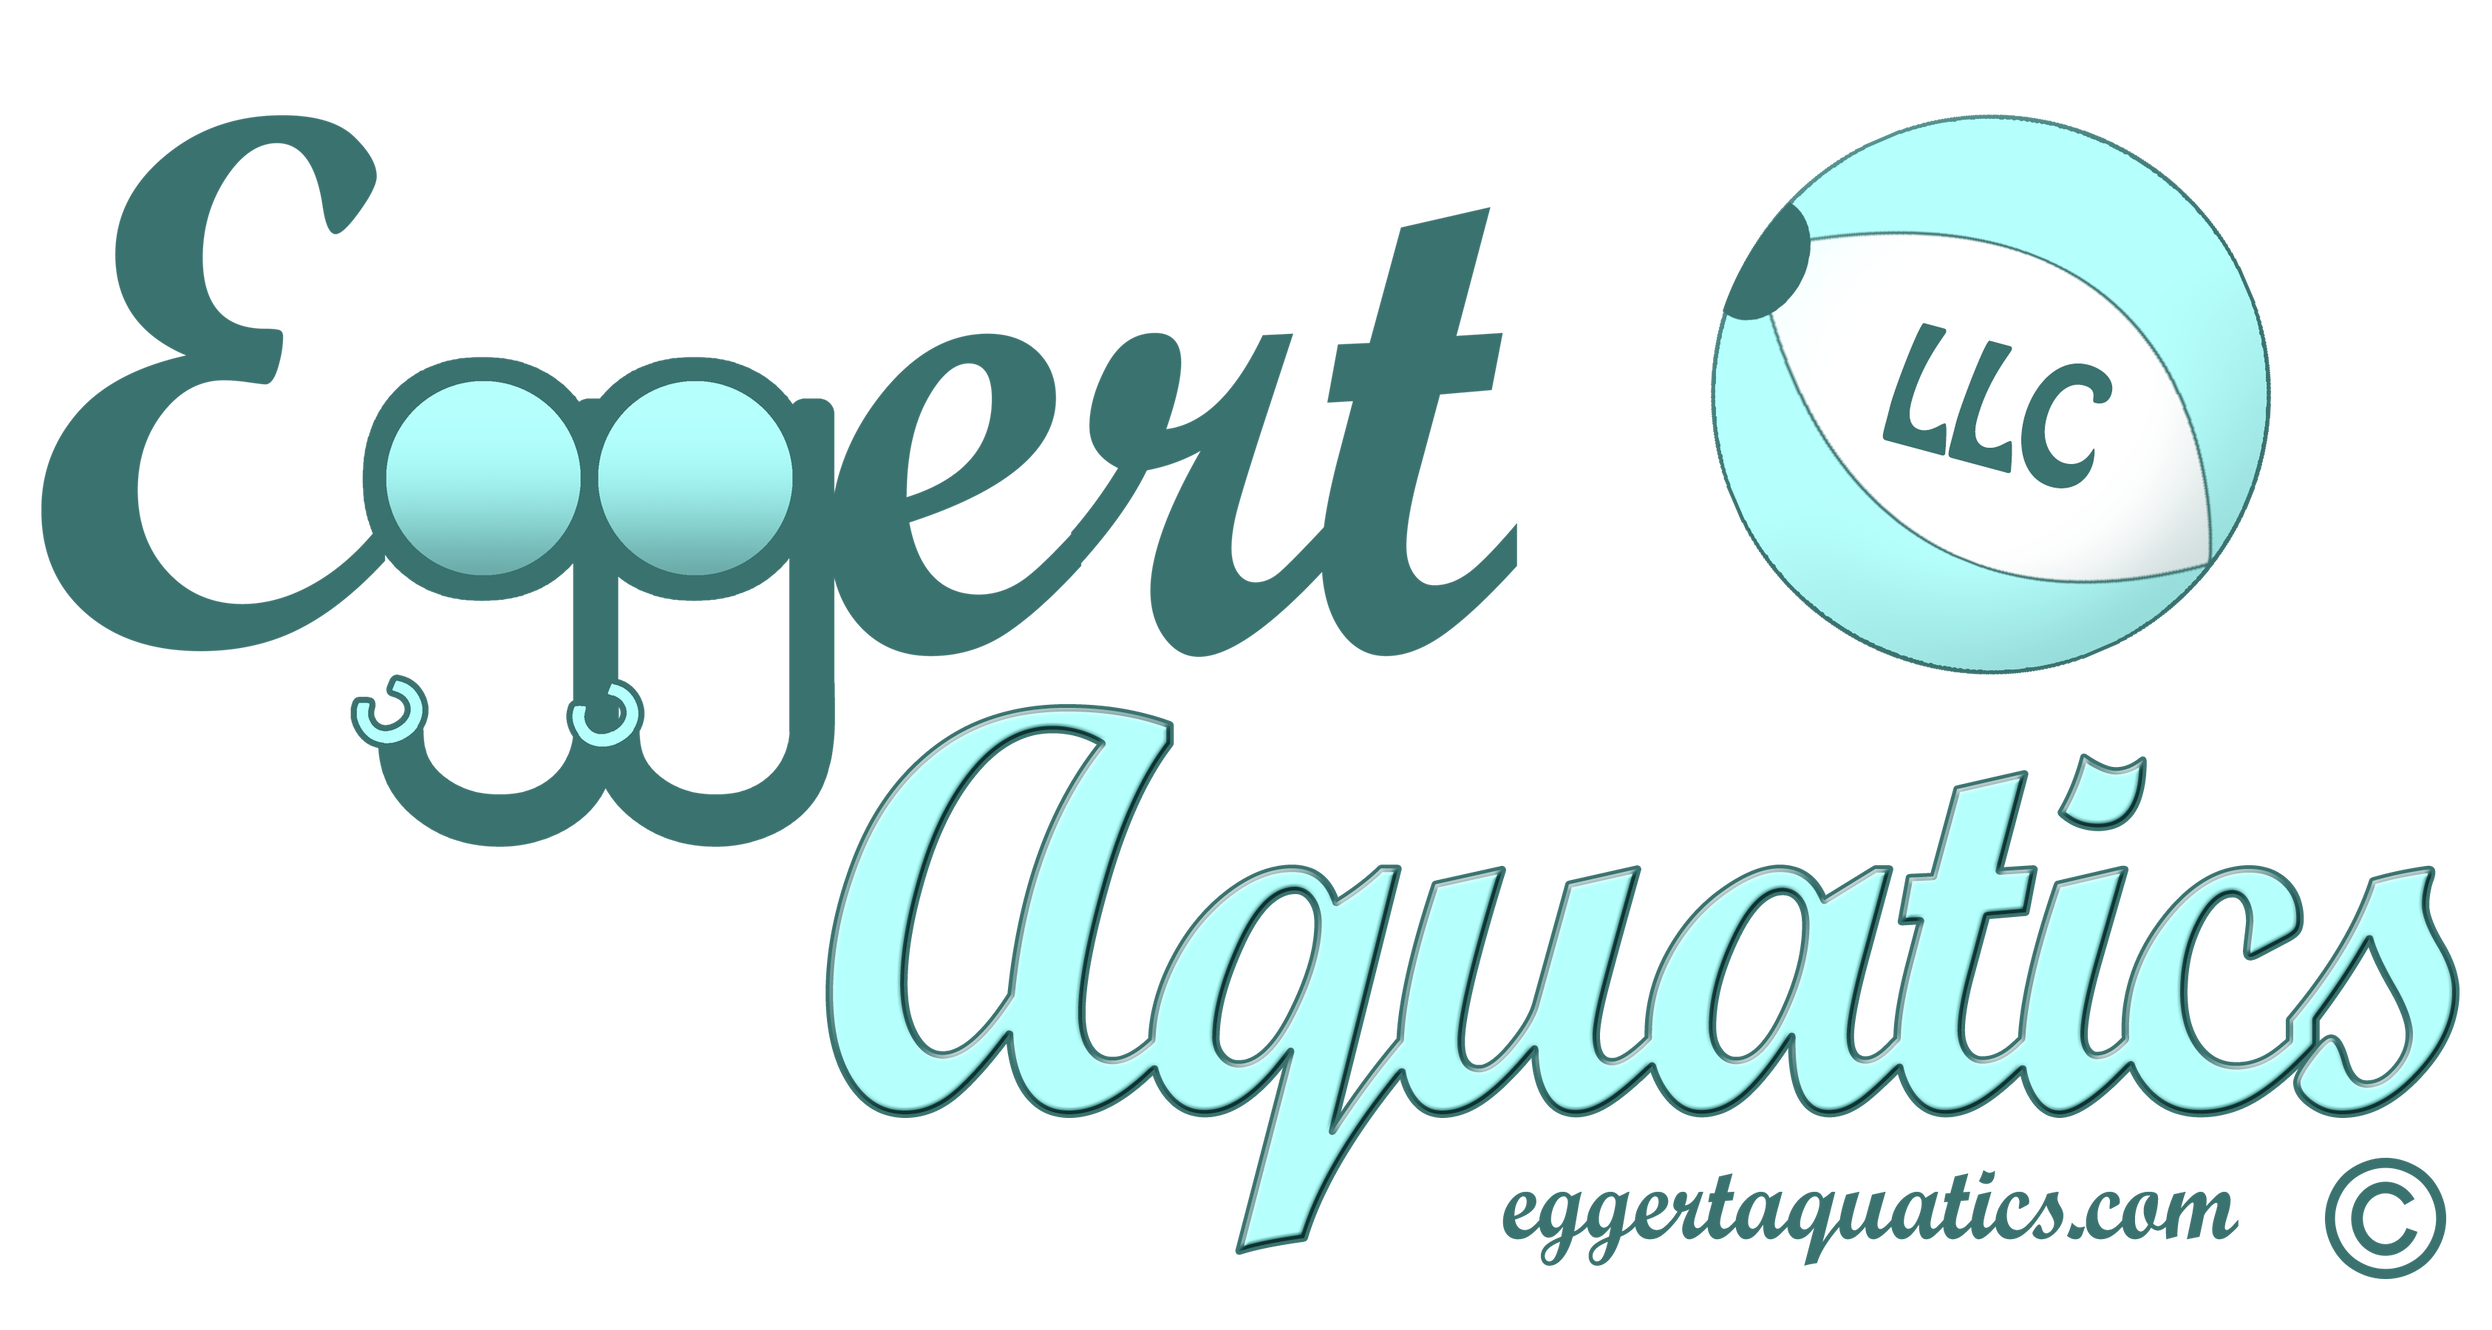 Eggert Aquatics, LLC